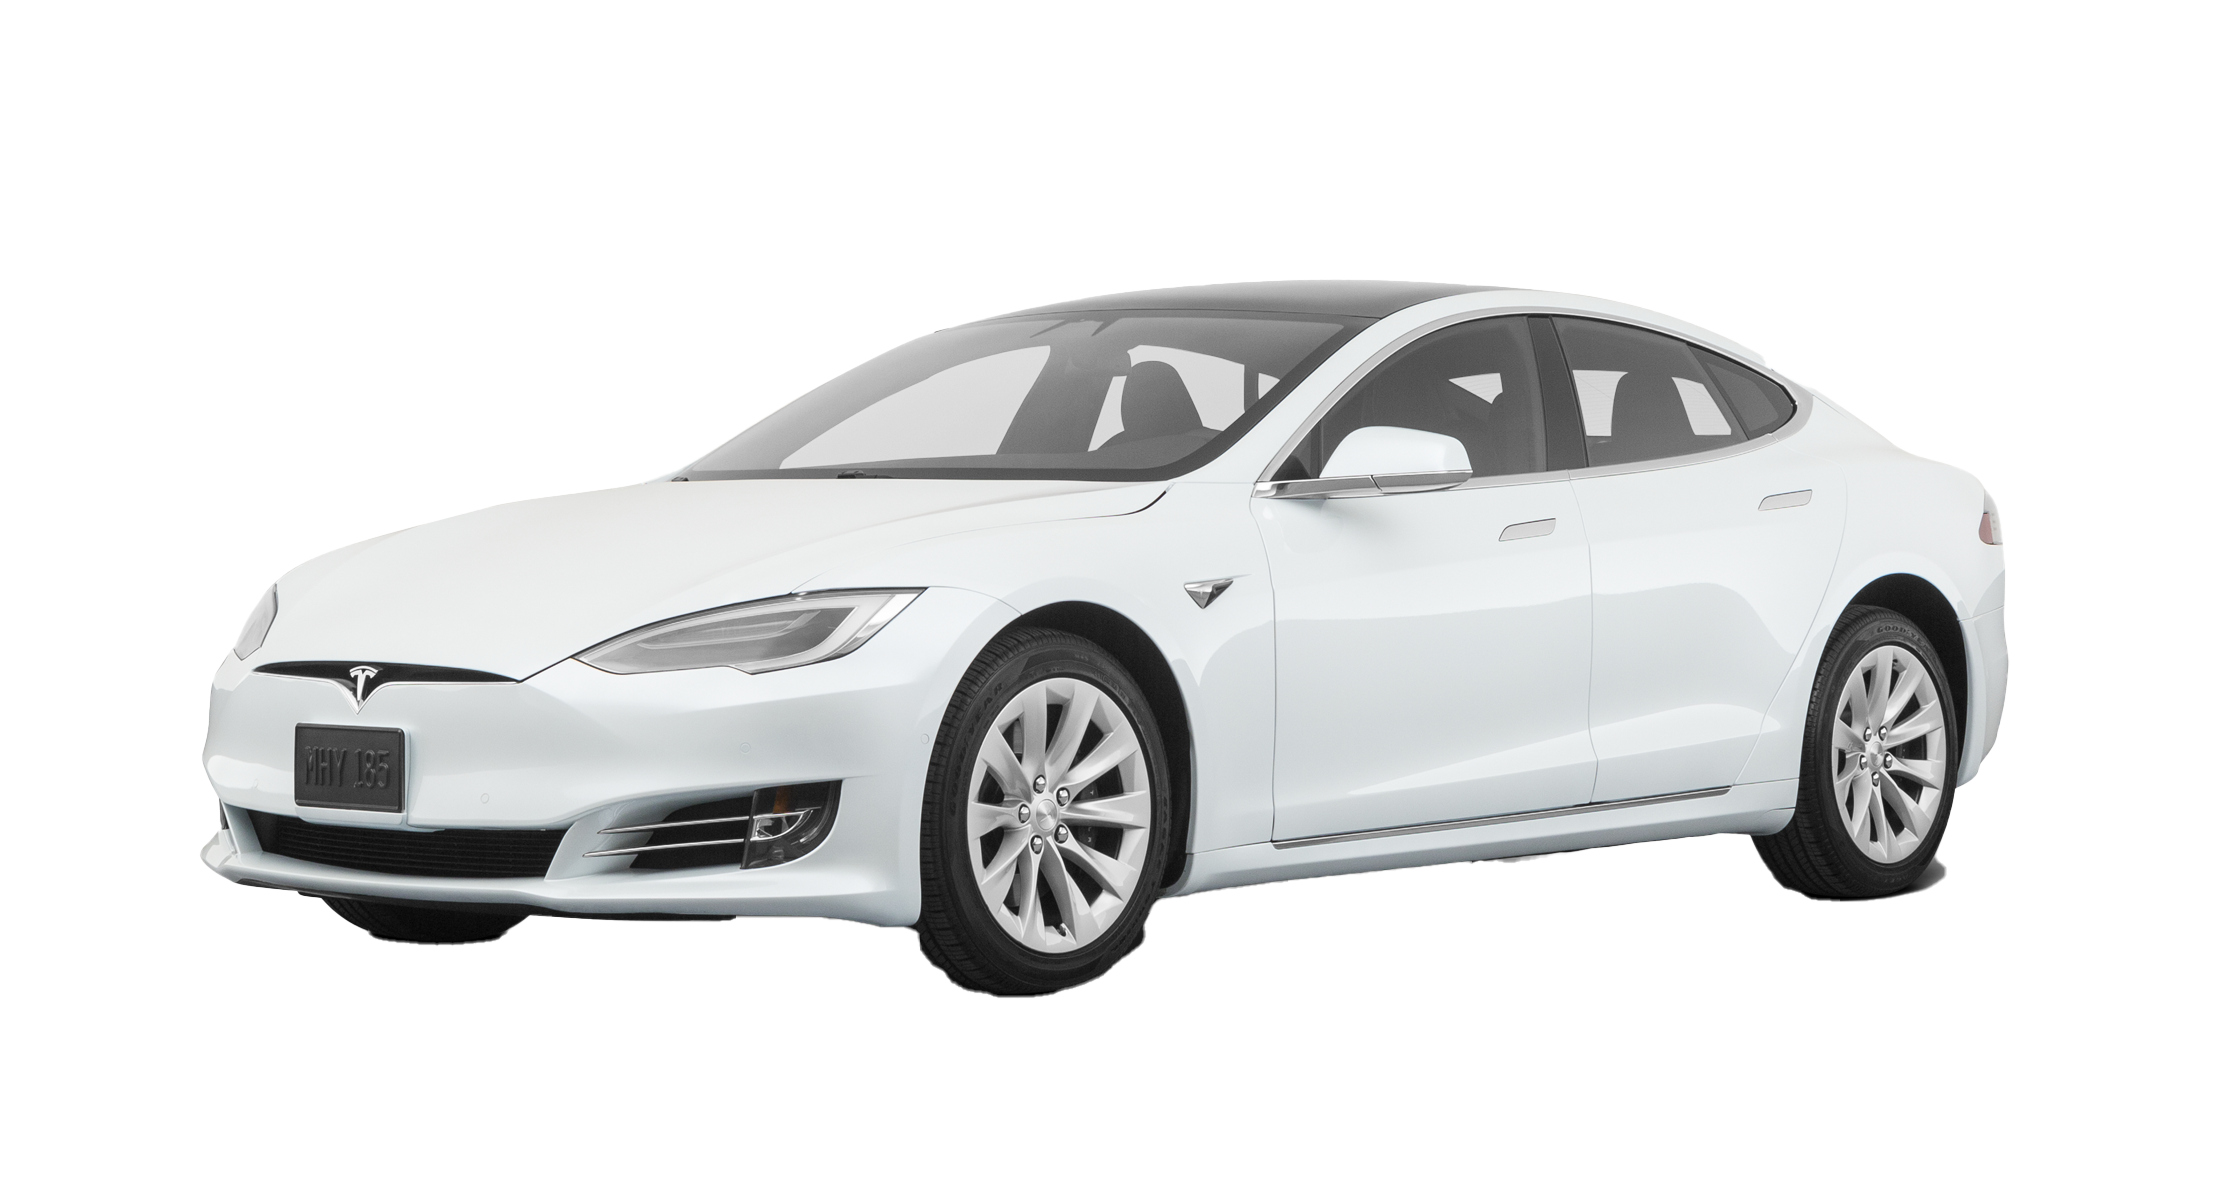 Tesla Model S PNG Image Transparent Background